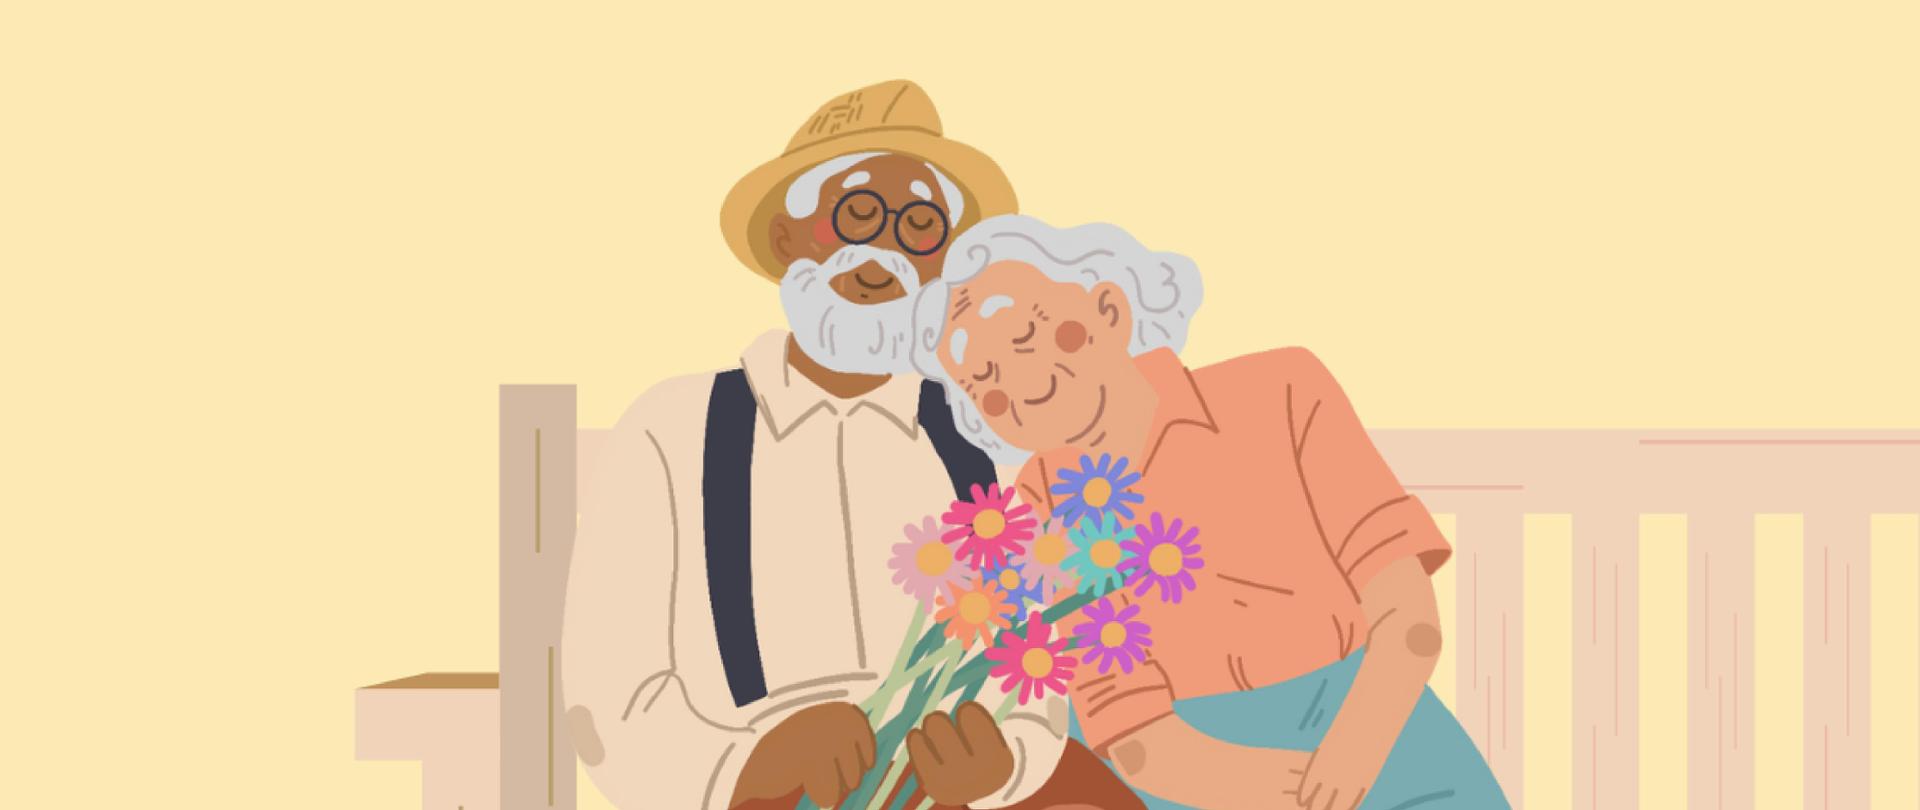 Plakat zapraszający na koncert z okazji dnia Babci i Dziadka, plakat na żółtym jasnym tle, na dole widzimy grafikę przedstawiającą siedzącą babcie i dziadka na ławce. Dziadkowie przytulają się do siebie. 